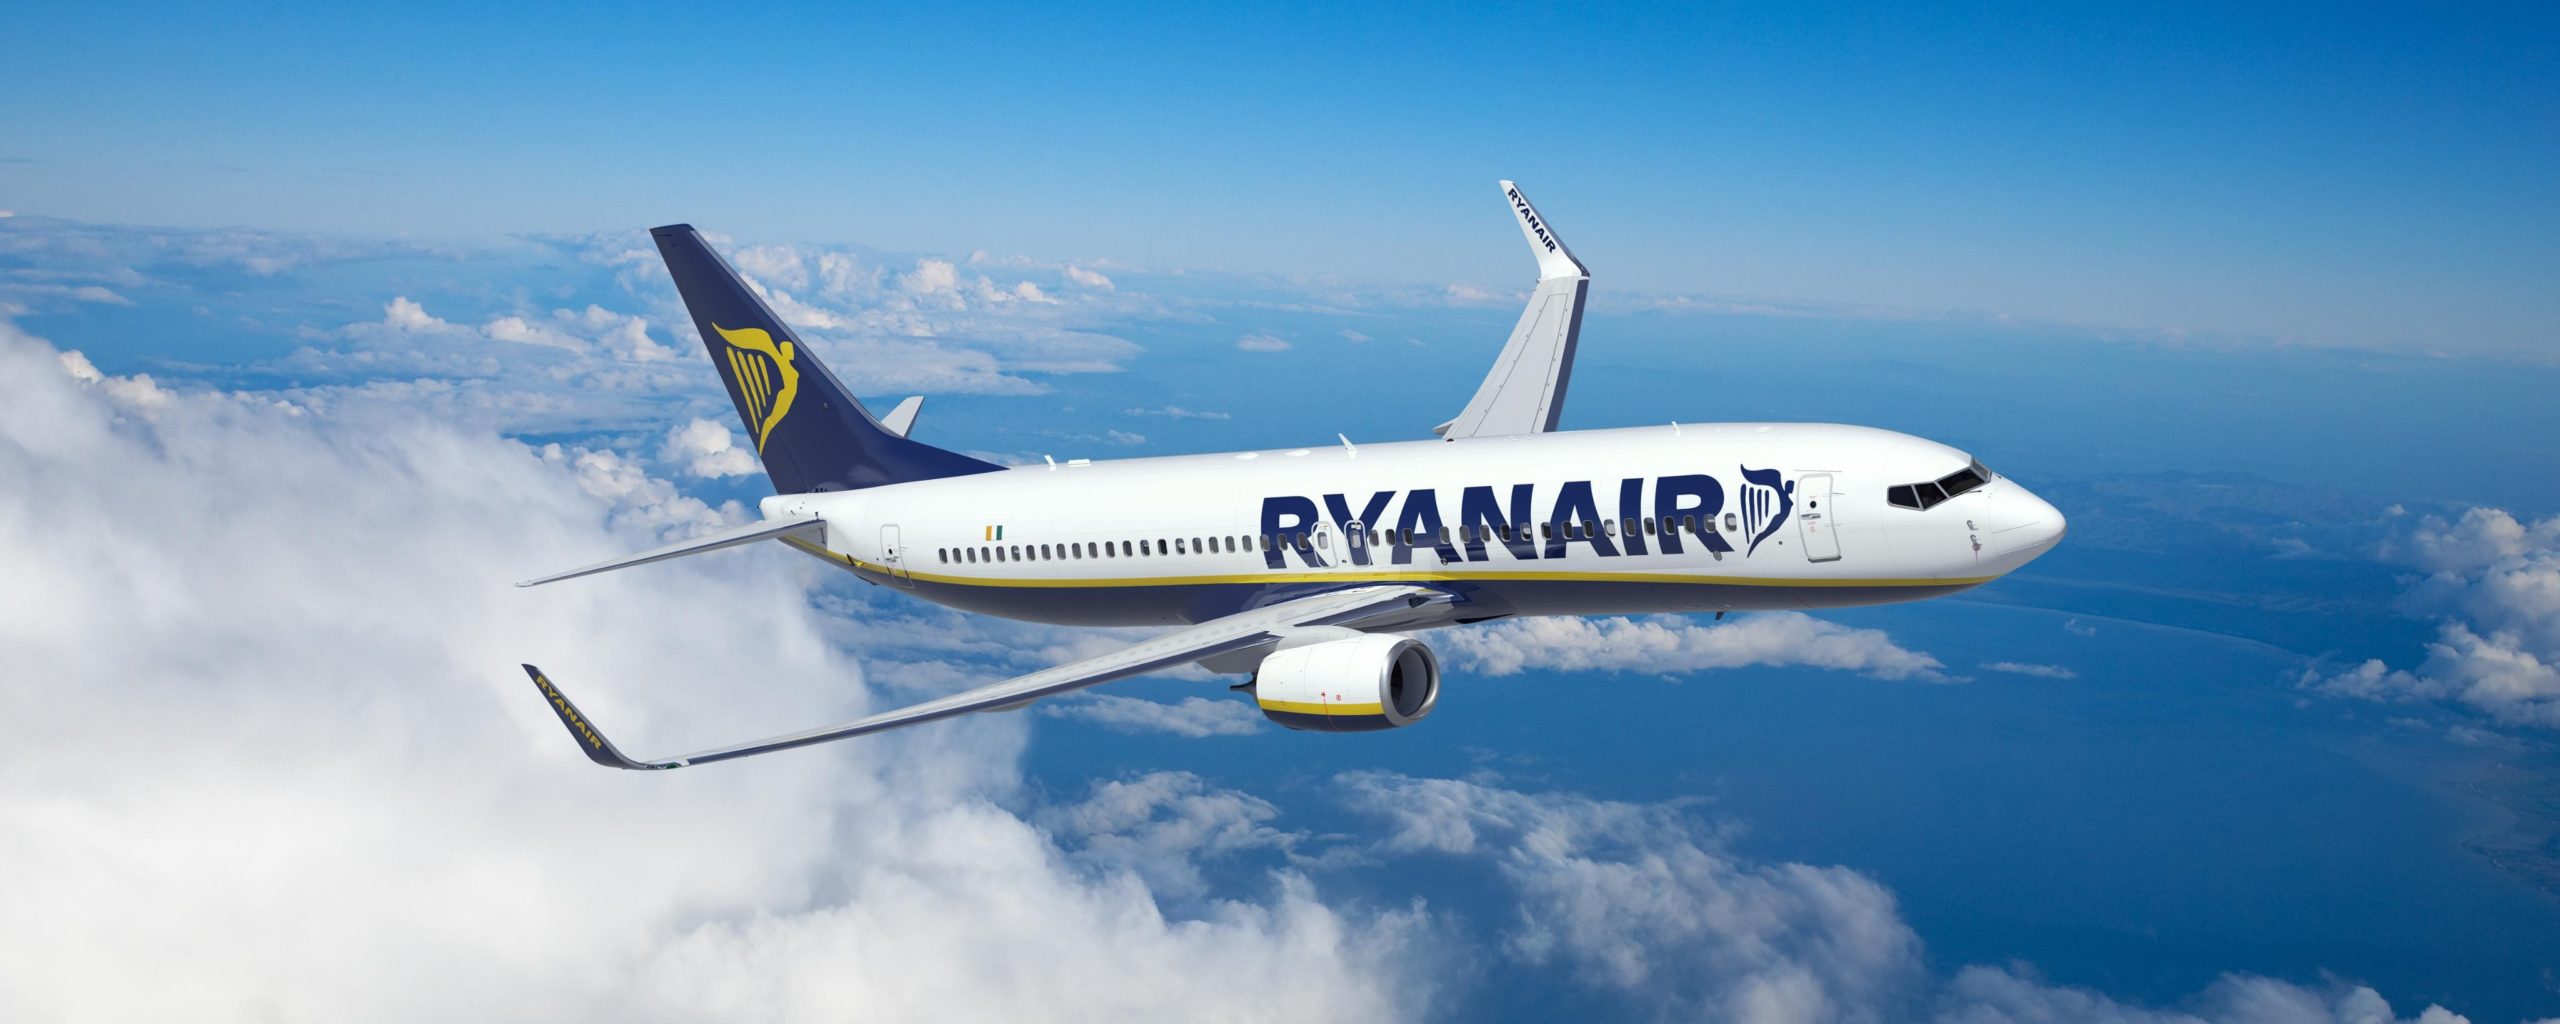 Încă o companie aeriană are probleme. Ryanair ar fi nevoită să anuleze curse ”în masă”